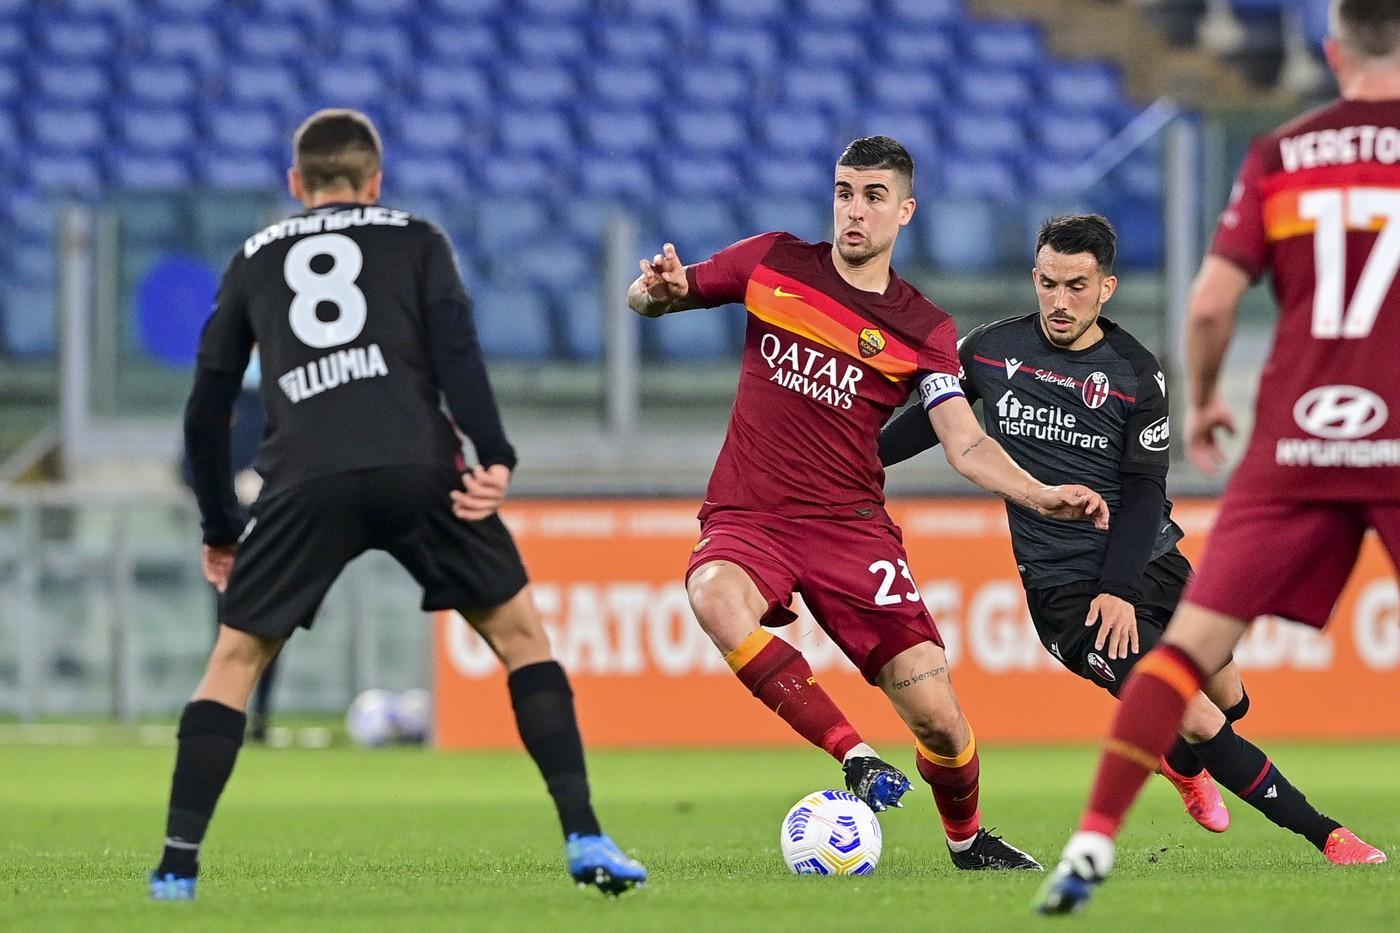 Le pagelle di Roma-Bologna 1-0: Mancini il migliore, Ibanez d'umiltà©LaPresse